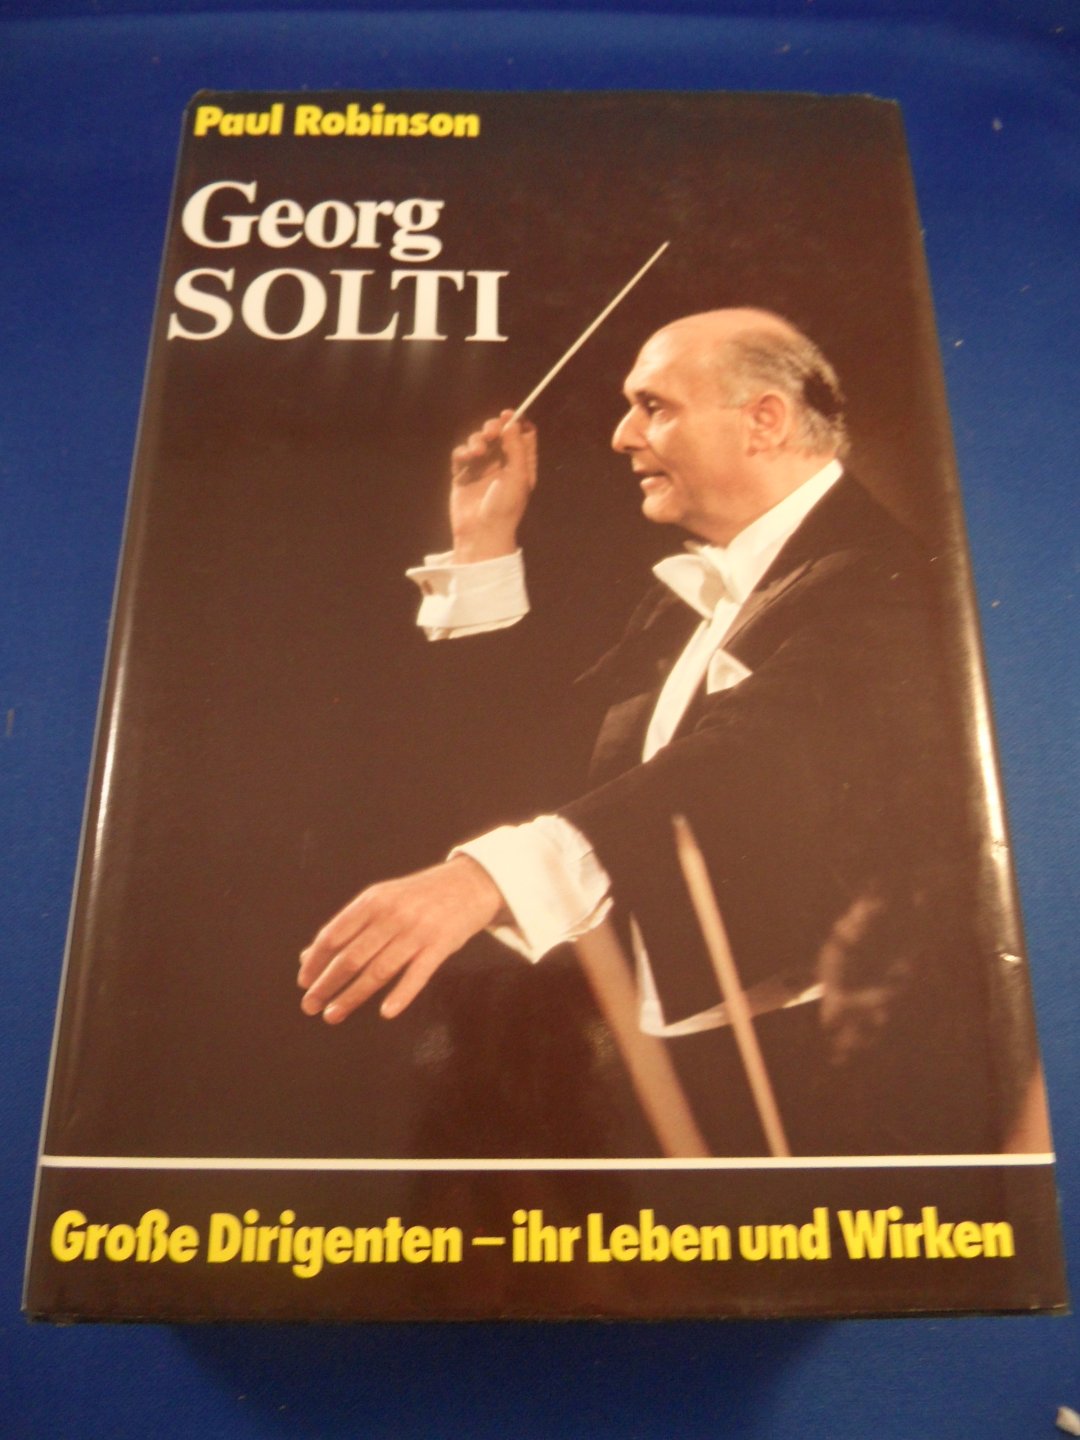 Robinson, Paul - Georg Solti Grosse Dirigenten, ihr Leben und Wirken